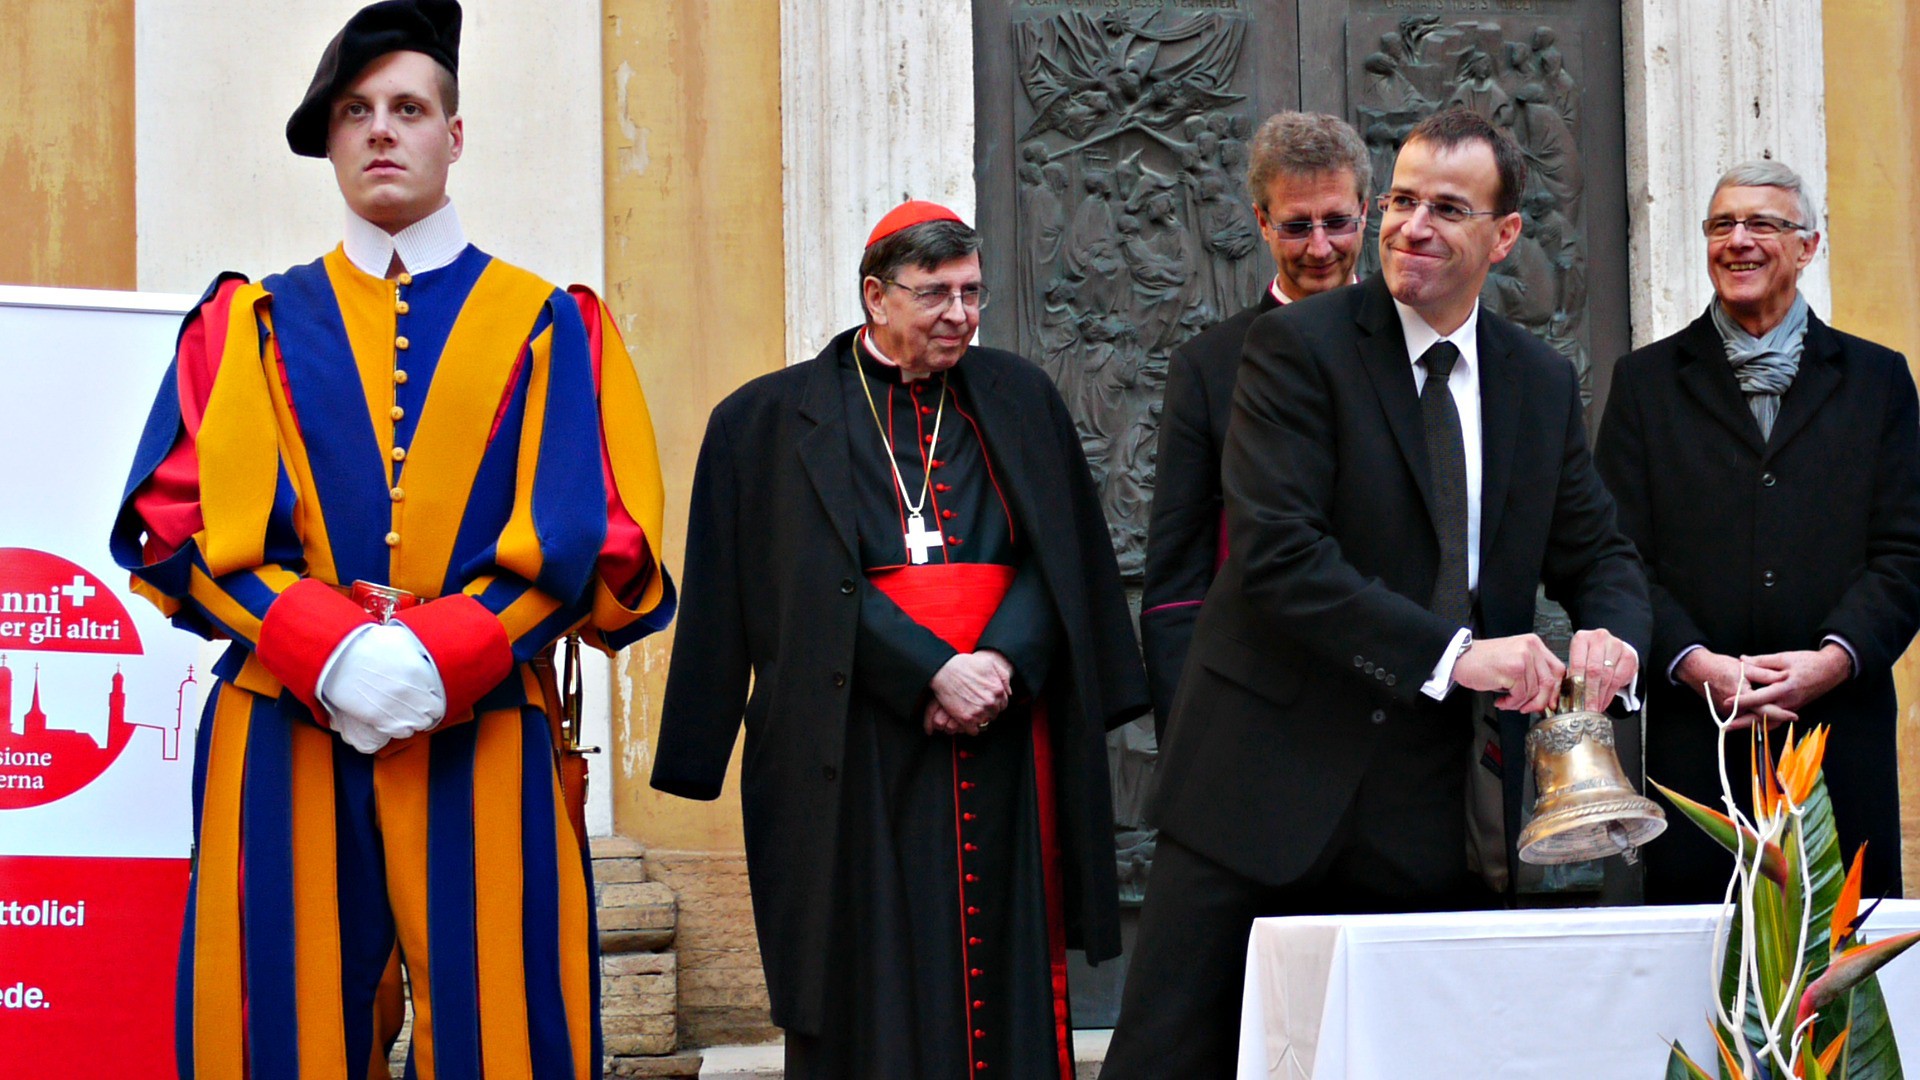 Daniel Anrig, commandant de la Garde suisse pontificale jusqu'en janvier 2015, sonne une cloche lors du Jubilé de la Mission Intérieure (Image: MI)